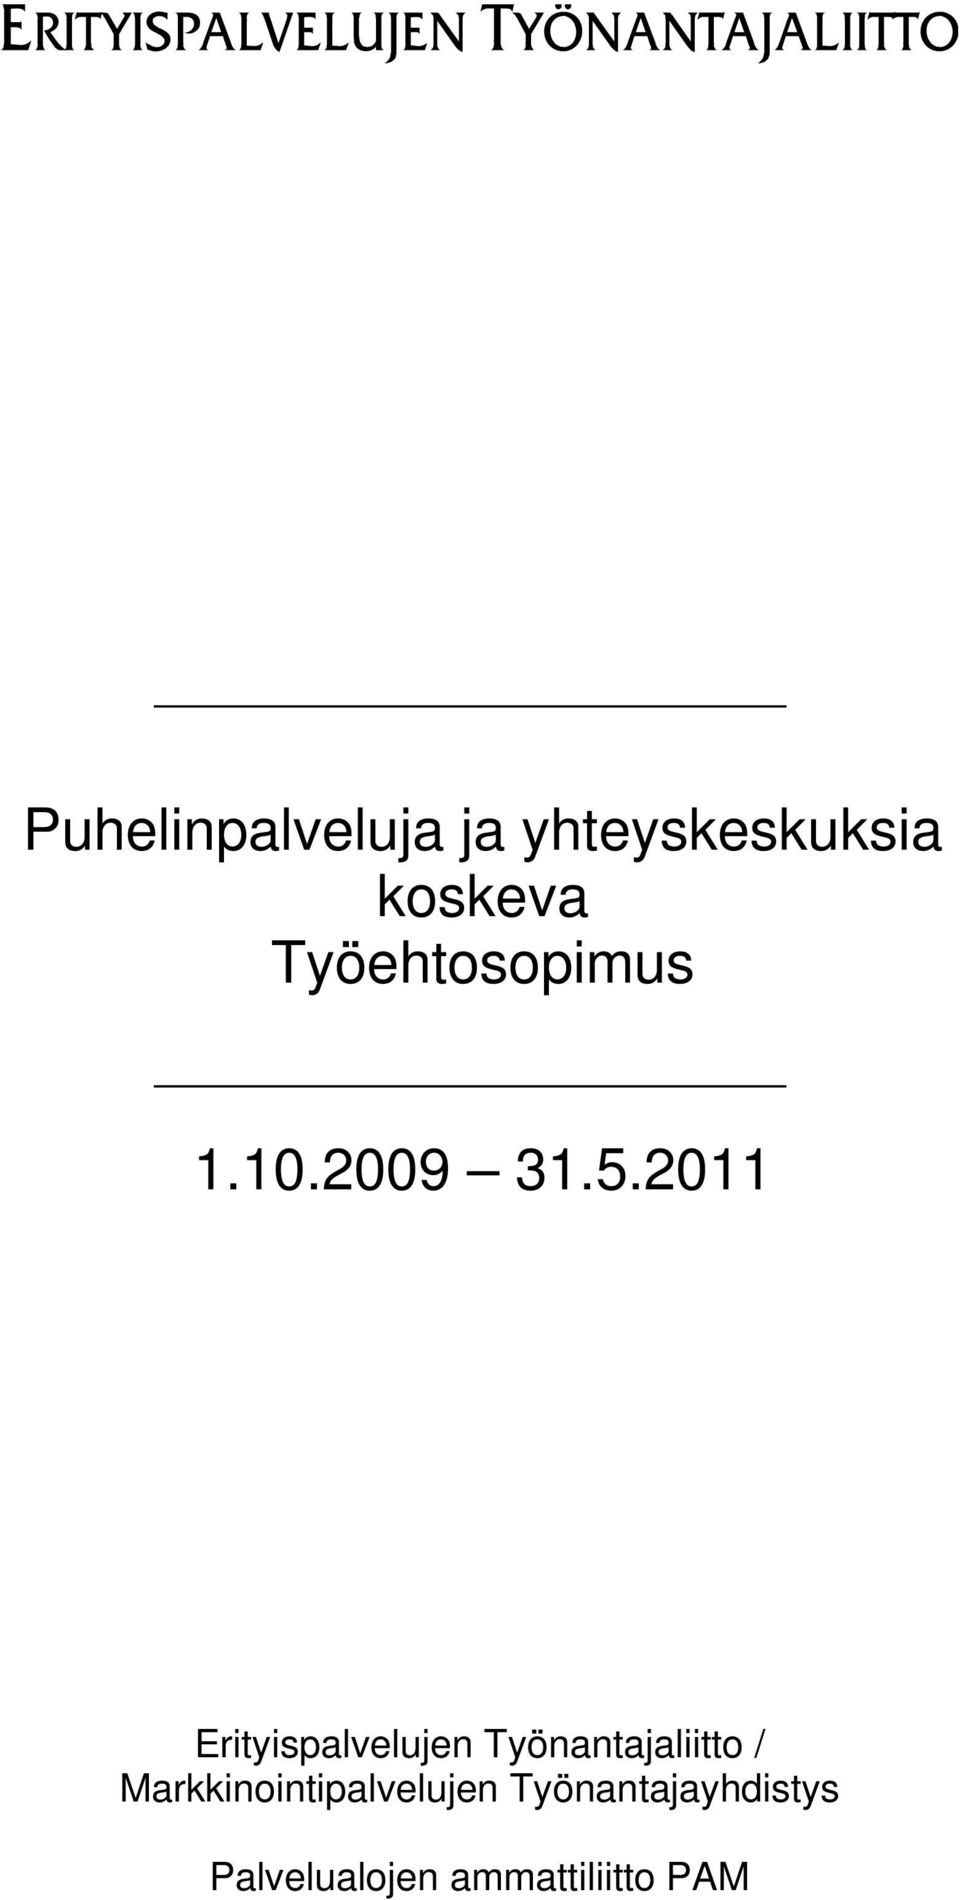 2011 Erityispalvelujen Työnantajaliitto /